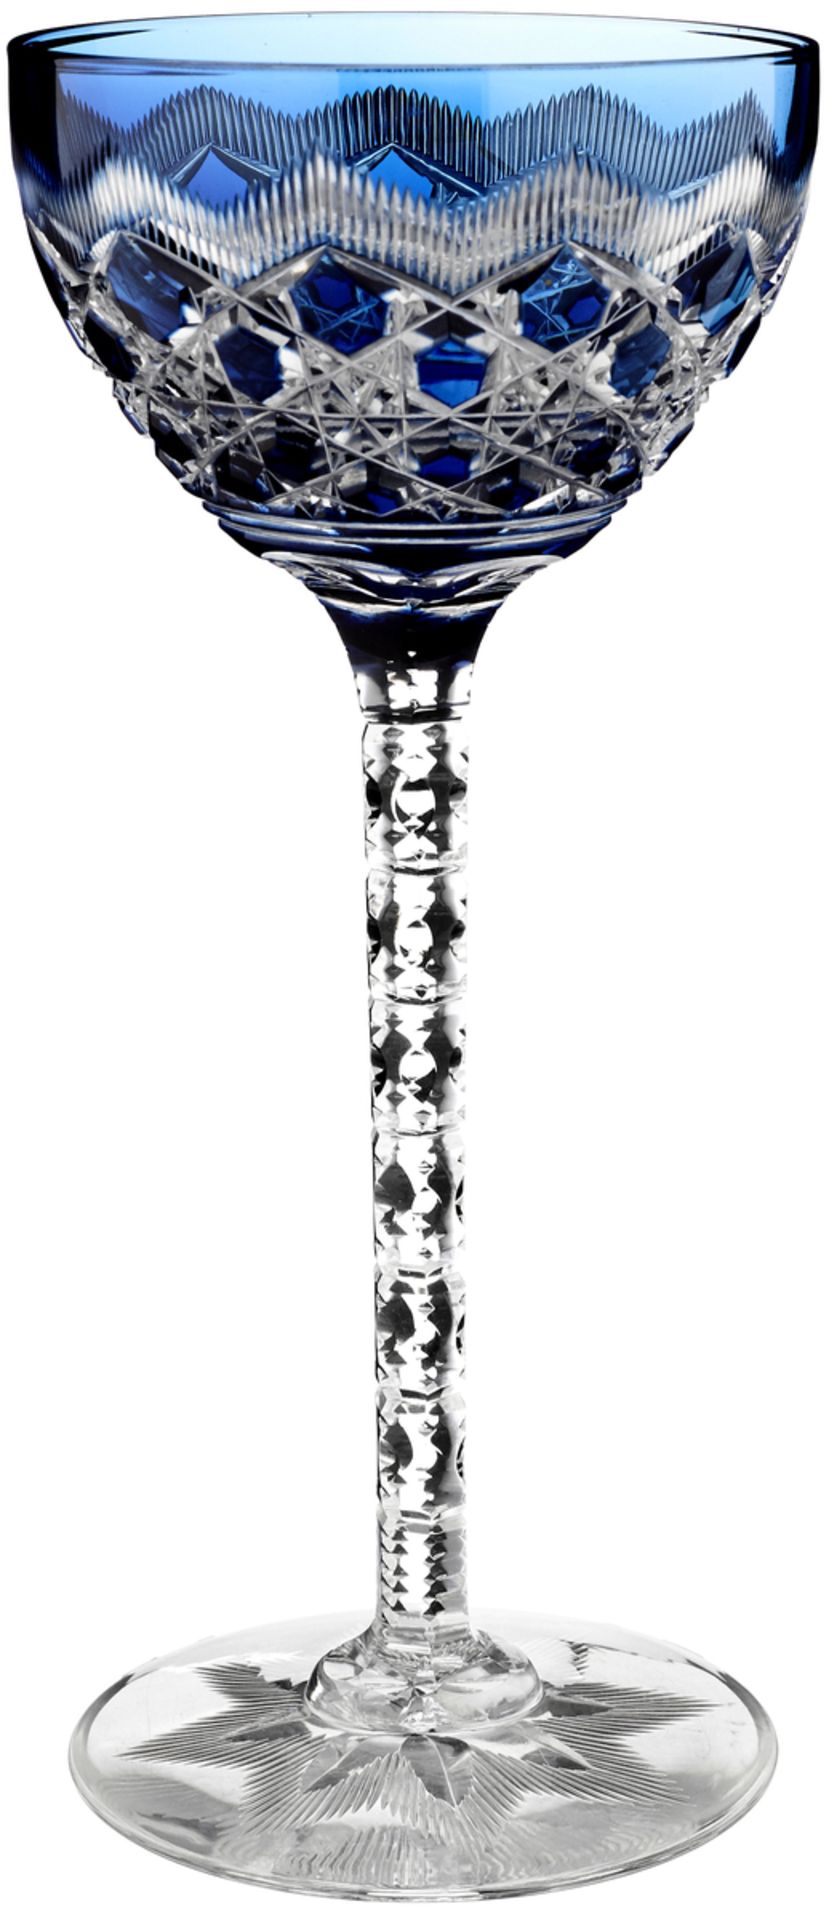 12 RieslinggläserAnfang 20. Jh. Farbloses Kristallglas mit verschieden farbigem Überfang und reichem - Bild 4 aus 6